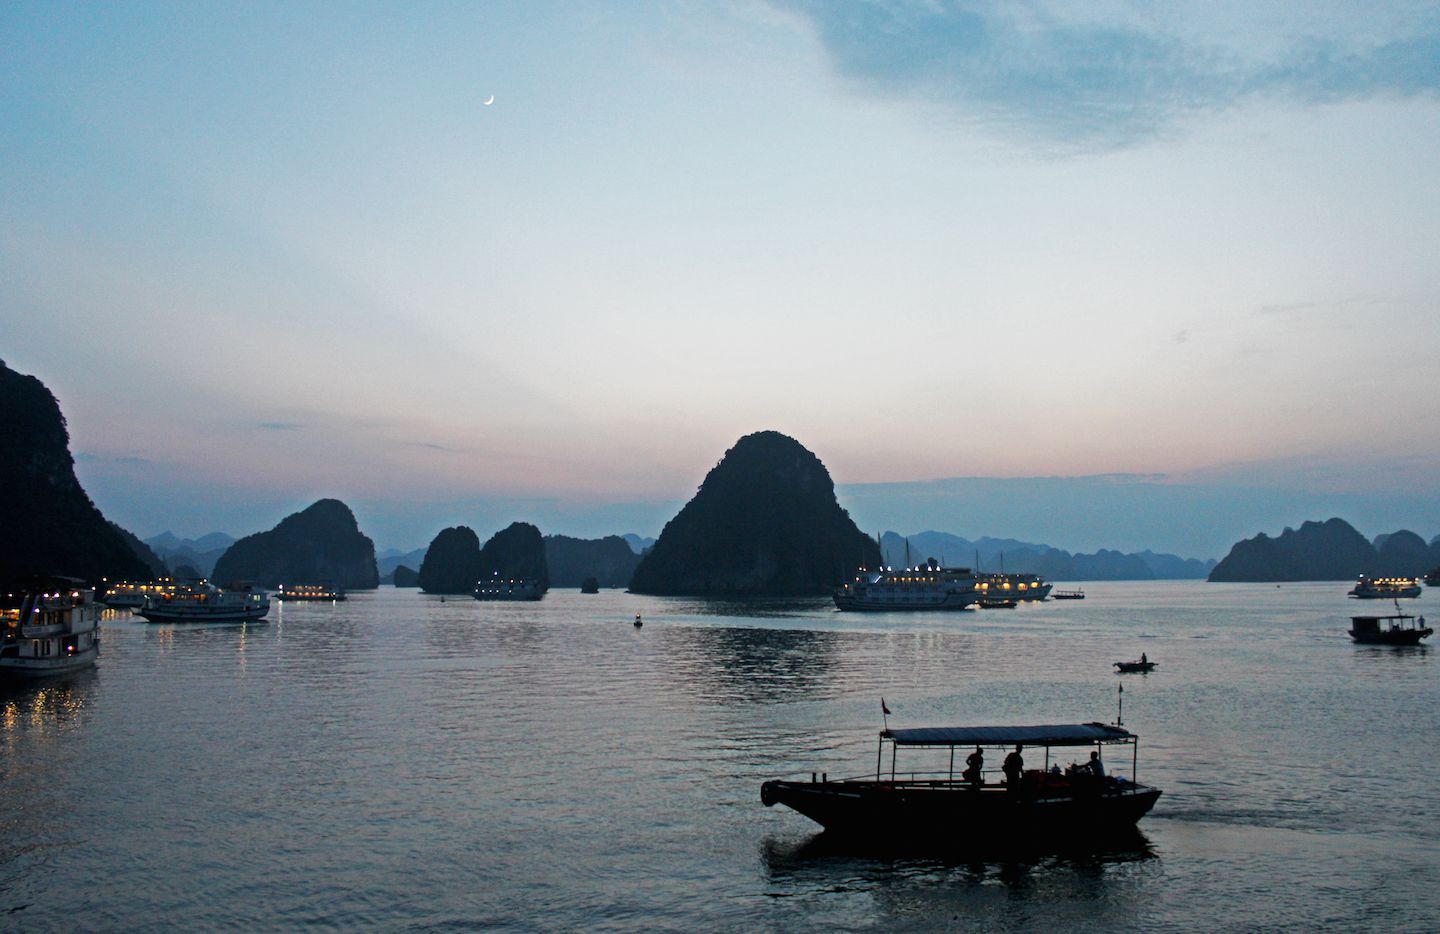 Sunset on Ha Long Bay